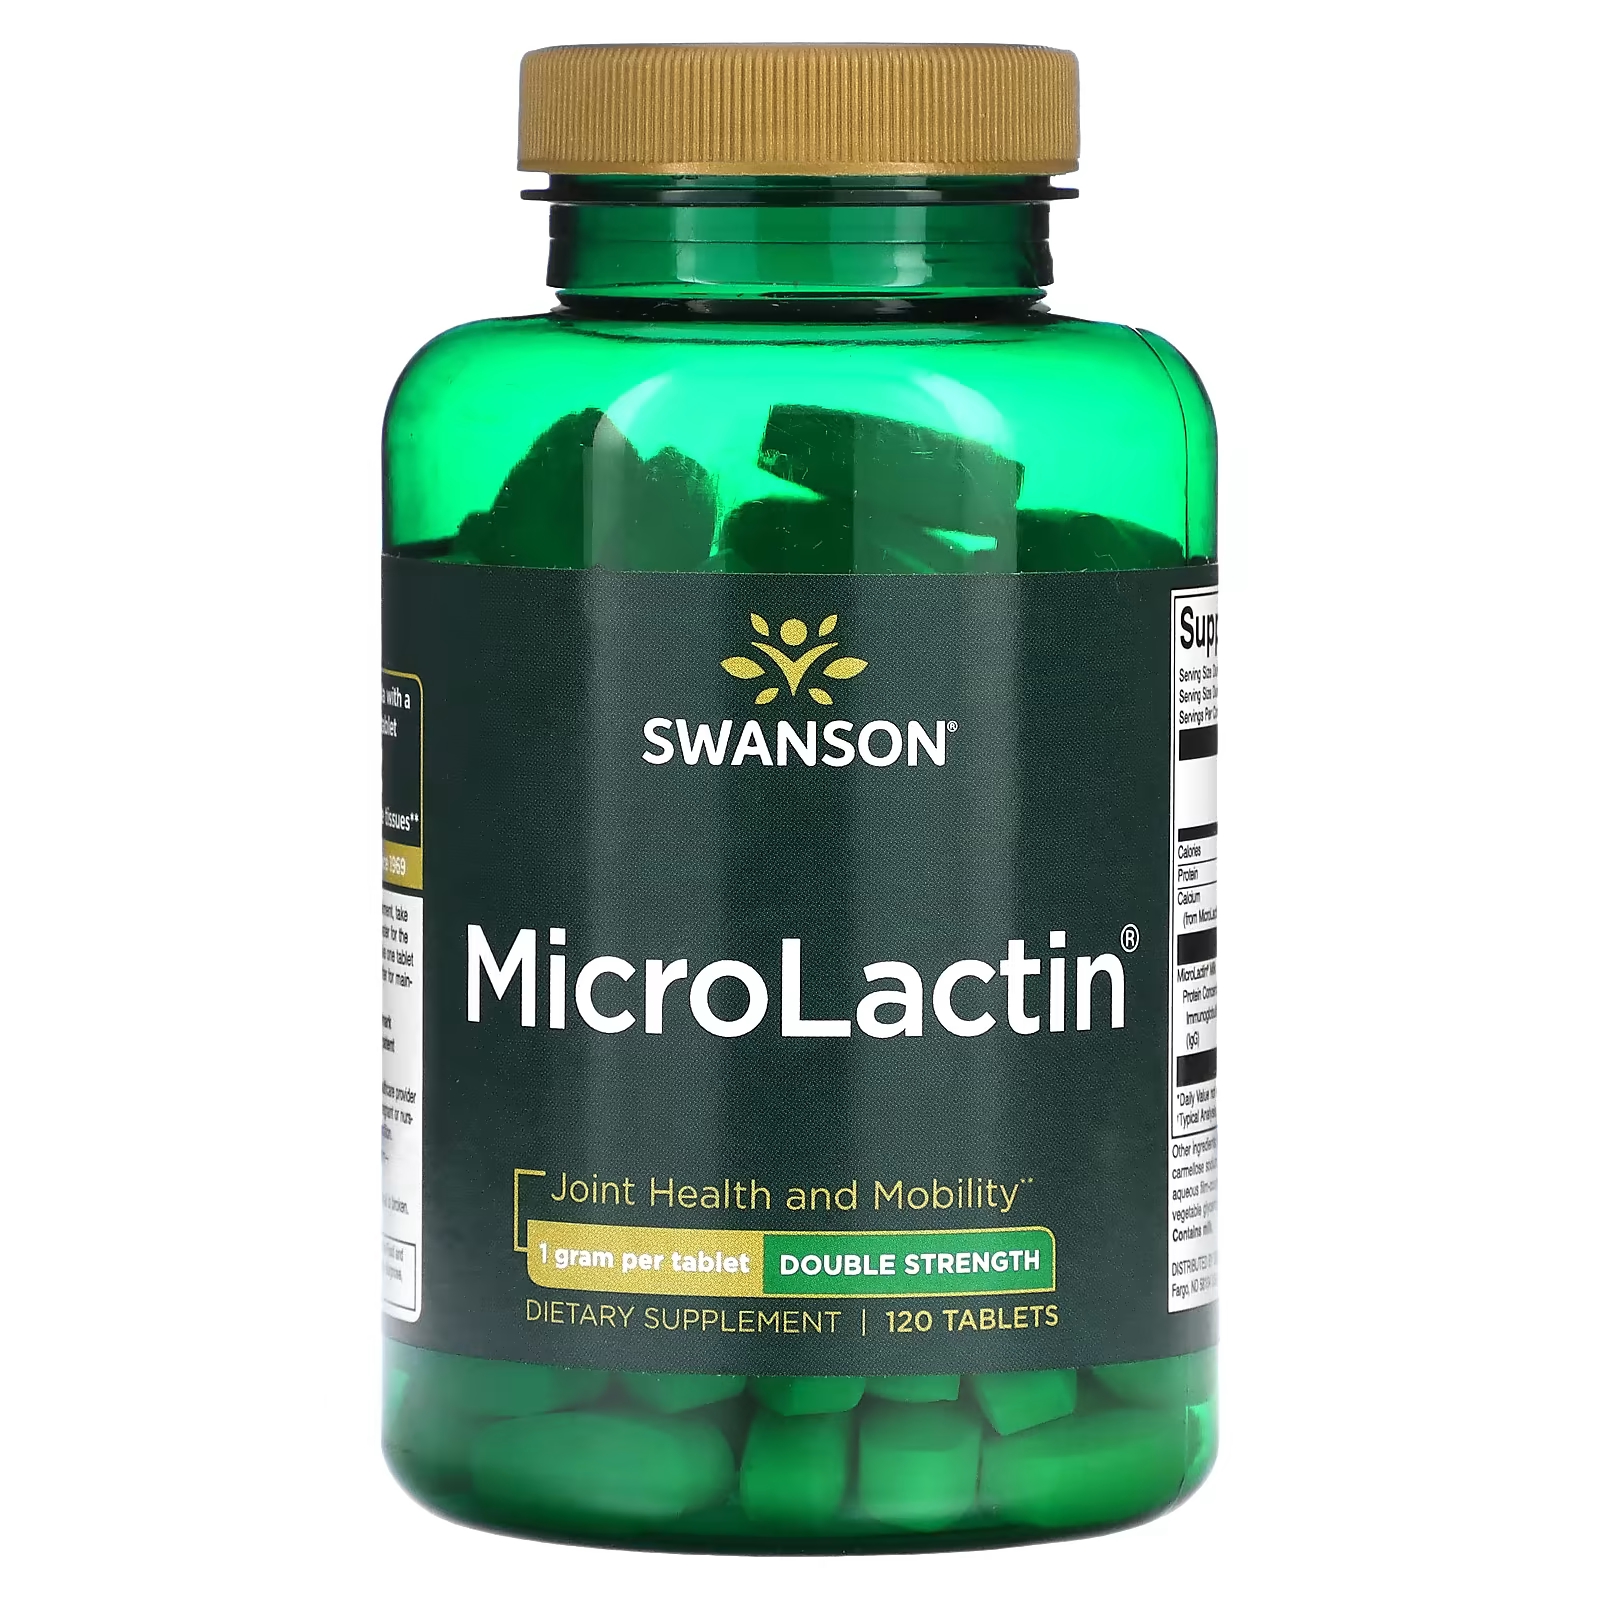 Пищевые добавки Swanson MicroLactin двойной силы, 120 таблеток делавье фредерик гундиль мишель пищевые добавки для занимающихся спортом